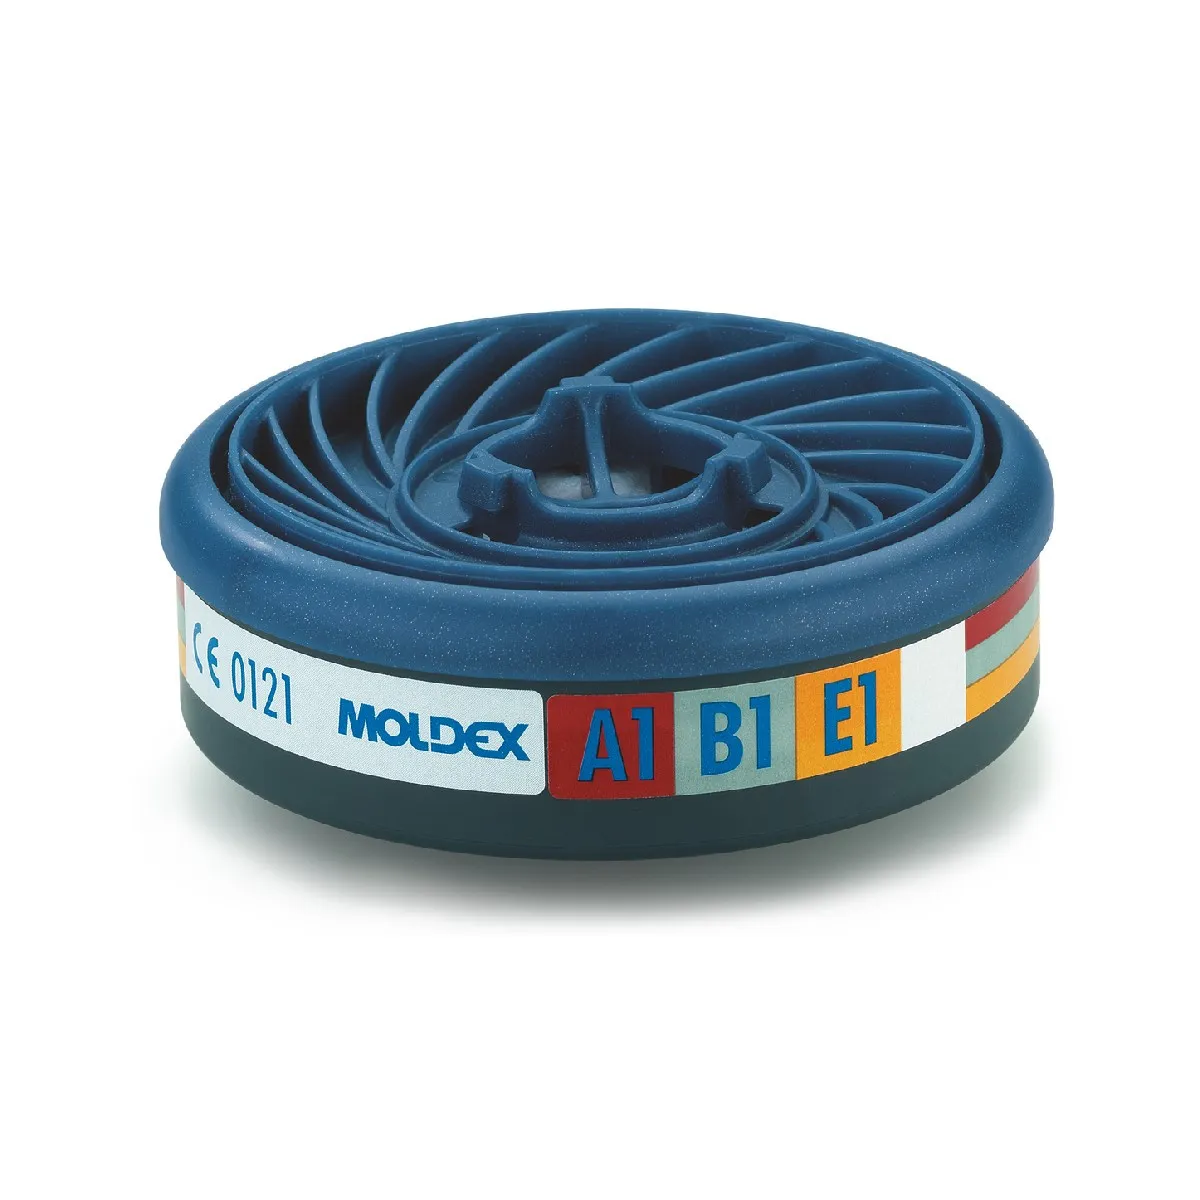 Gasni filter ABE1 9300 - Moldex - KOM 